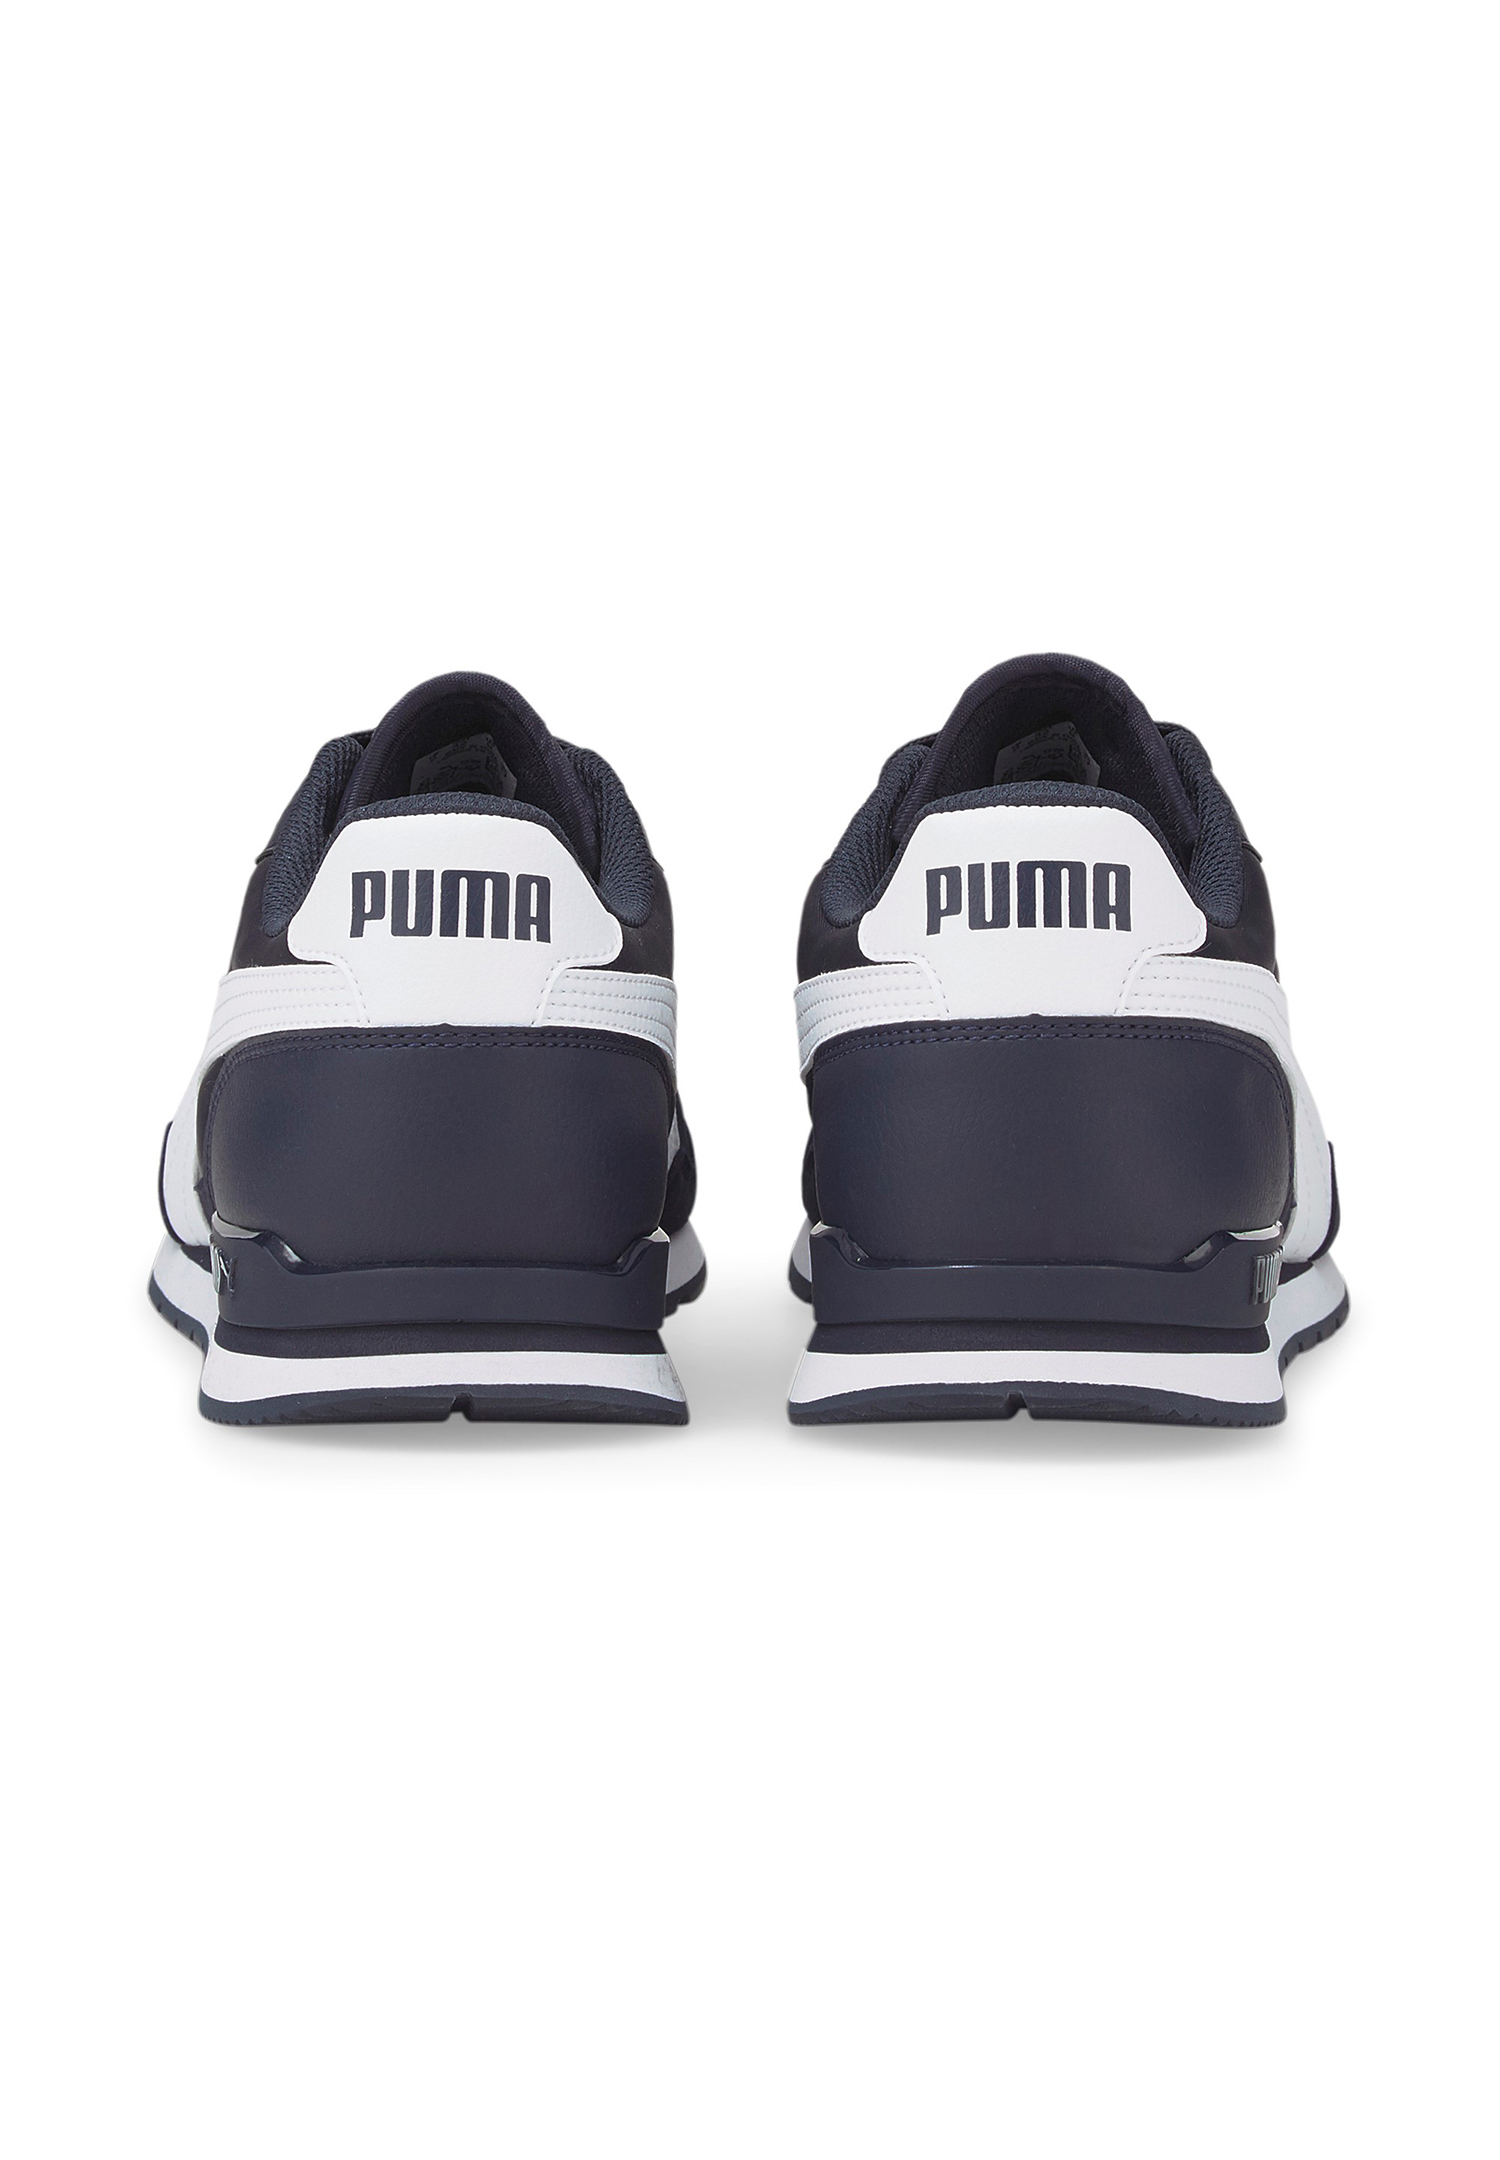 Puma ST Runner V3 NL Unisex Sneaker Turnschuhe 384857 blau